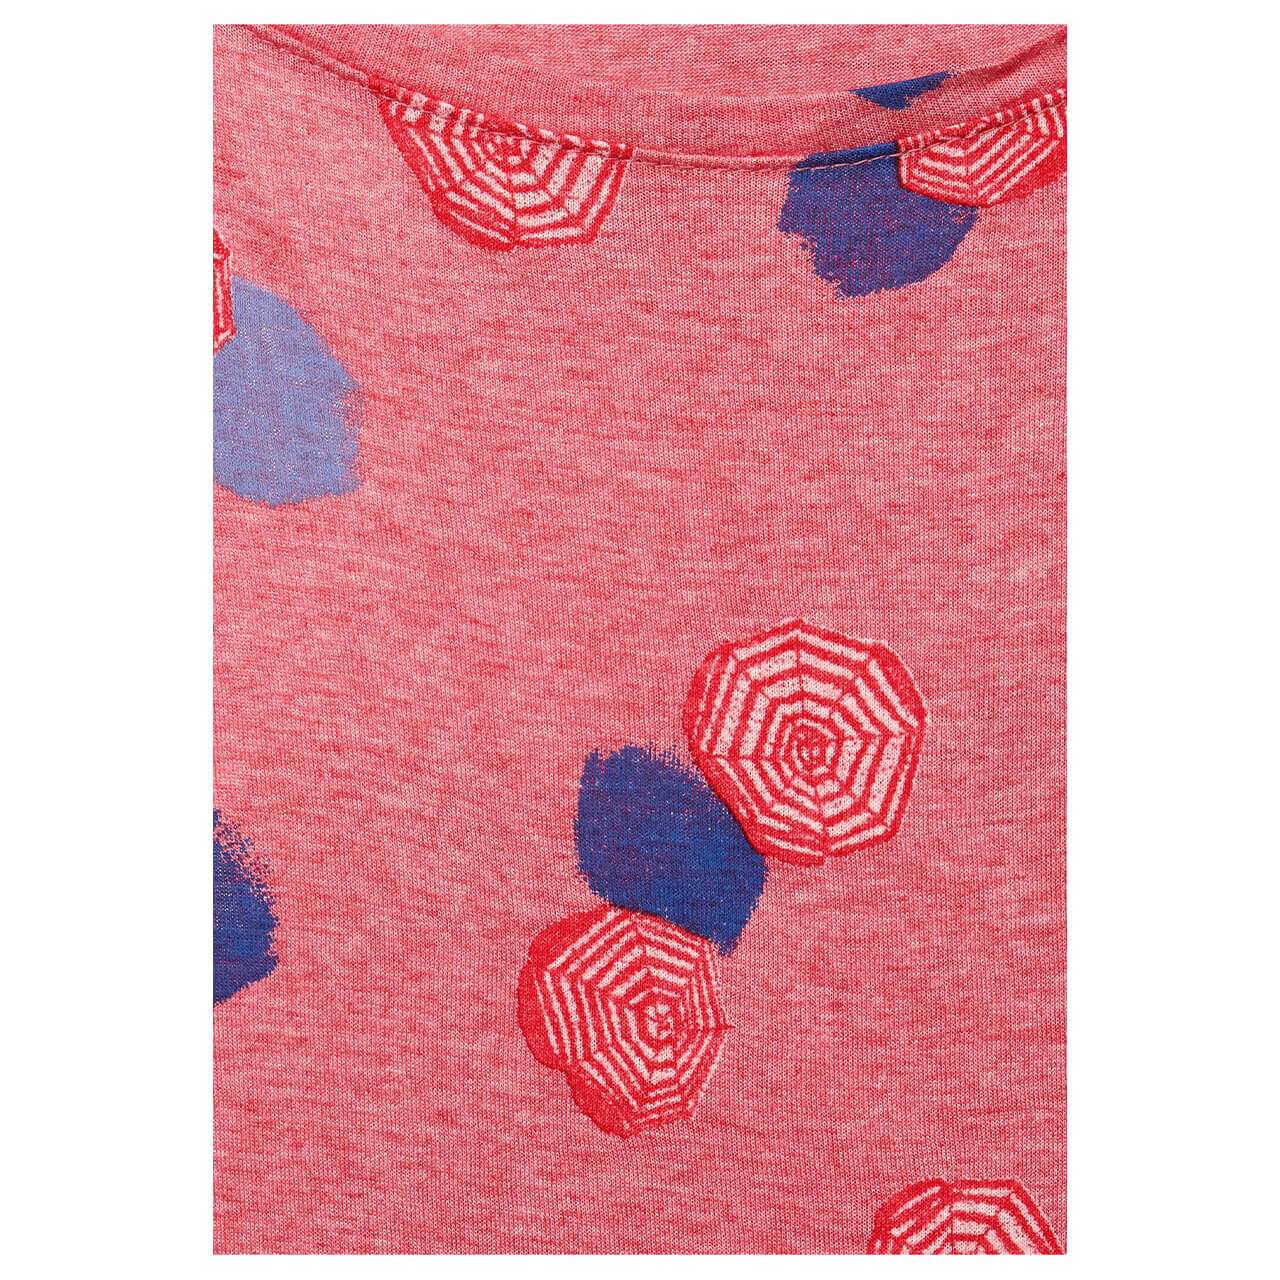 Cecil Melange Shape T.Shirt für Damen in Hellrot mit Print, FarbNr.: 32477